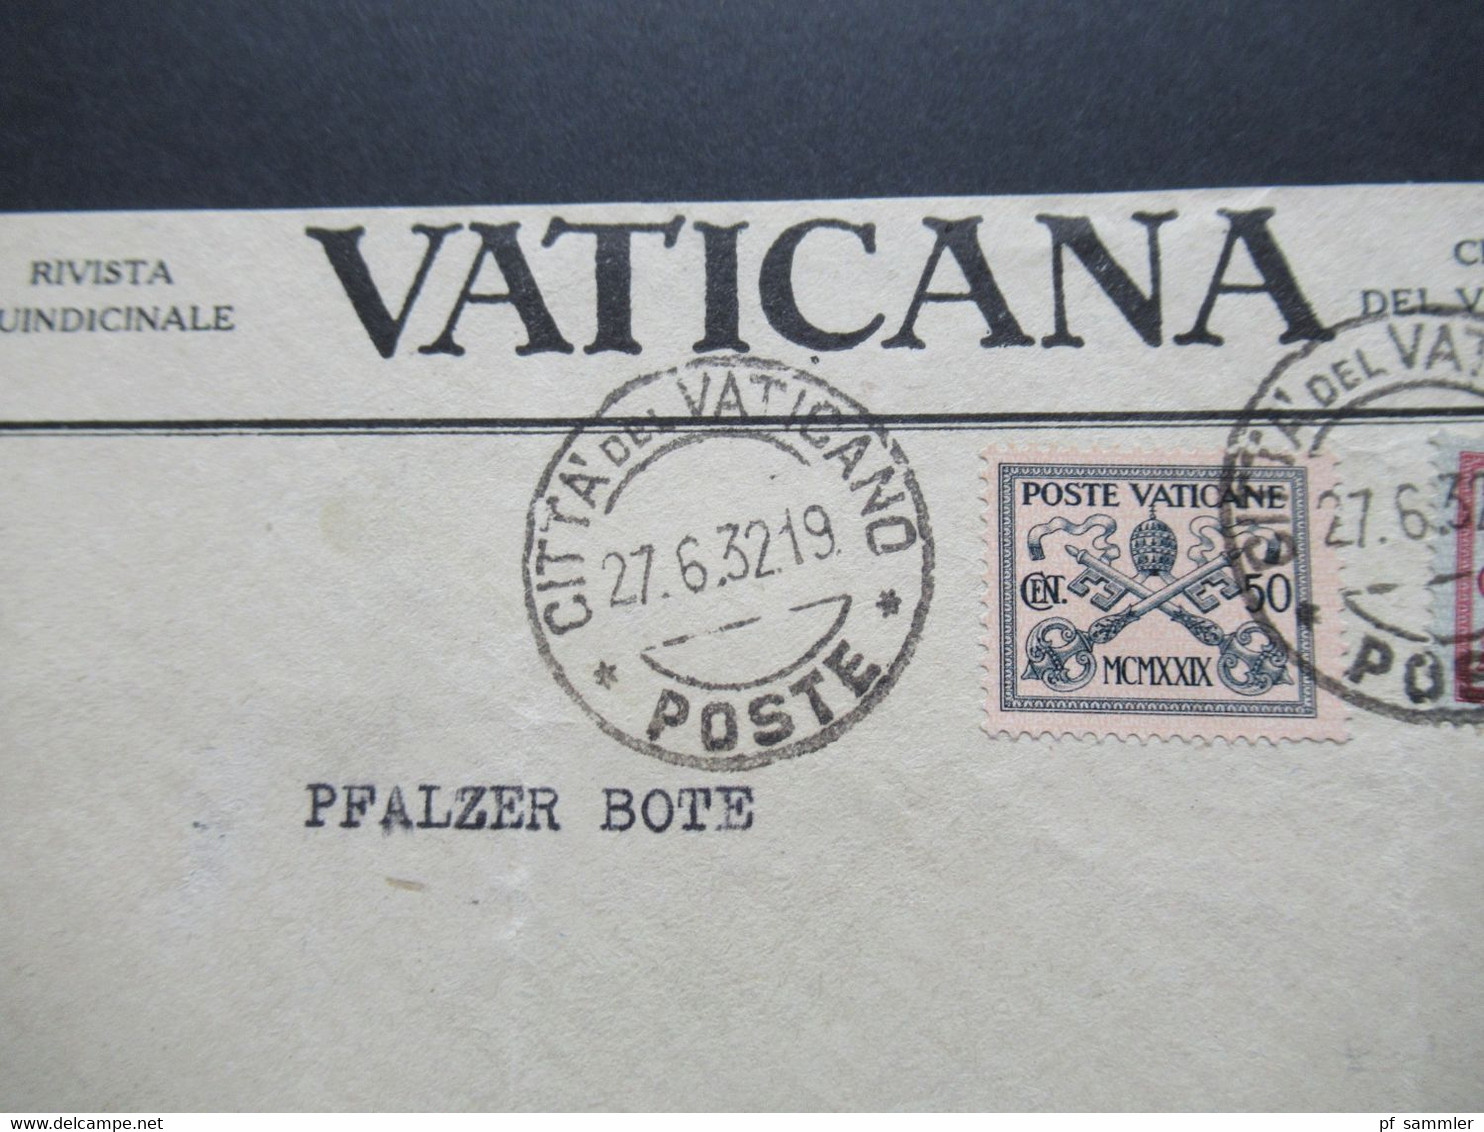 Vatikan 1929 / 32 Freimarken Nr.6 Und 7 MiF Umschlag Vaticana Citta Del Vaticano Nach Heidelberg Gesendet - Lettres & Documents